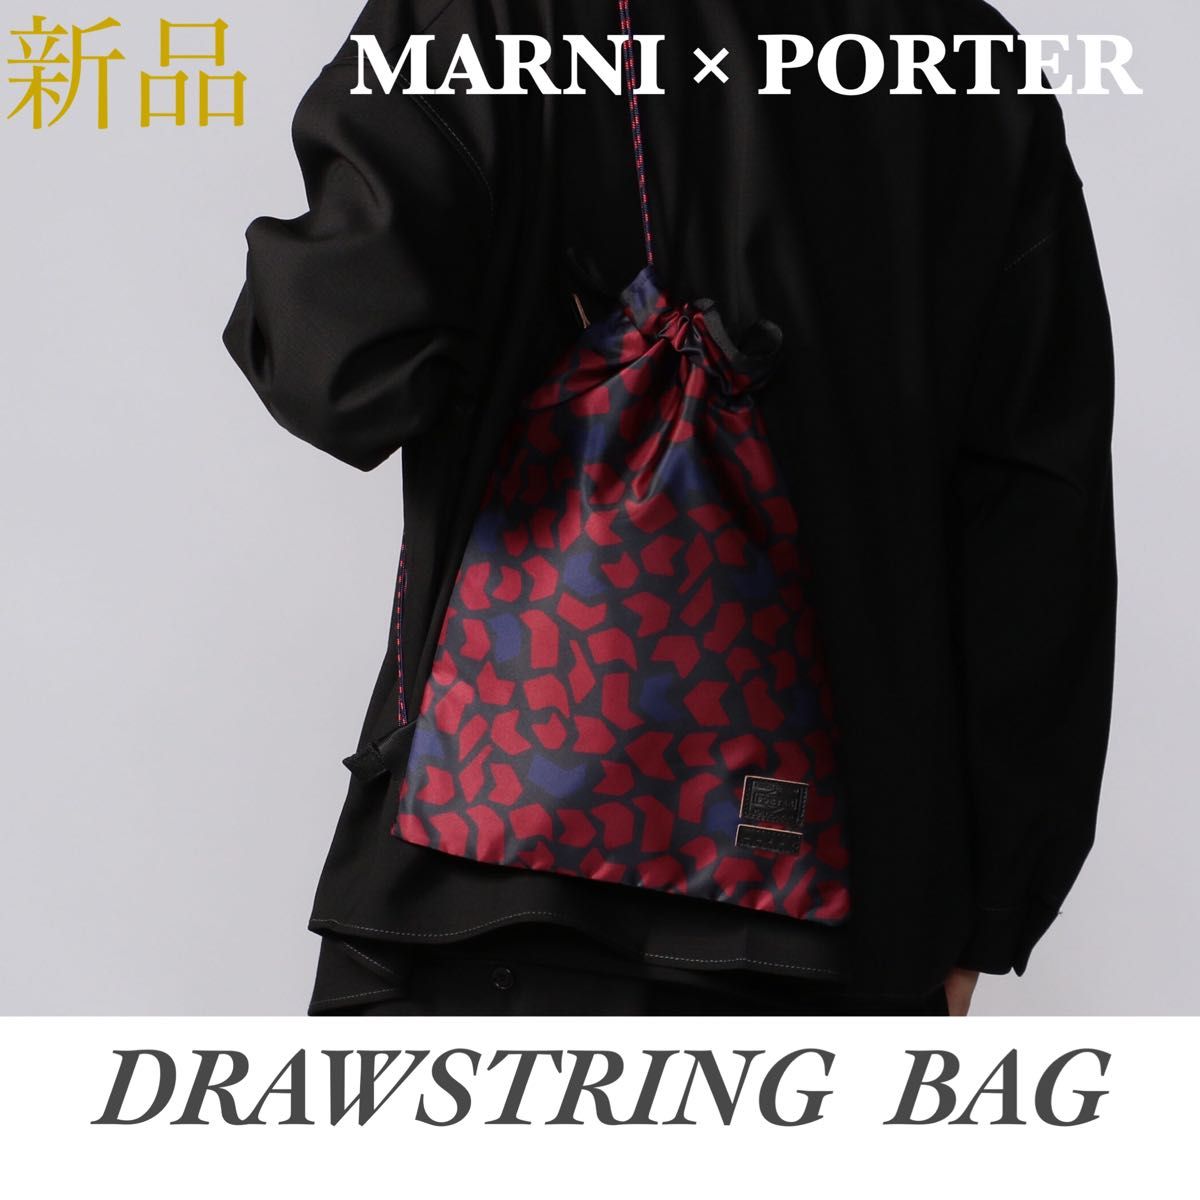 【新品タグ付】MARNI PORTER マルニ ポーター ドローストリングバッグ コラボ ナップサック リュック